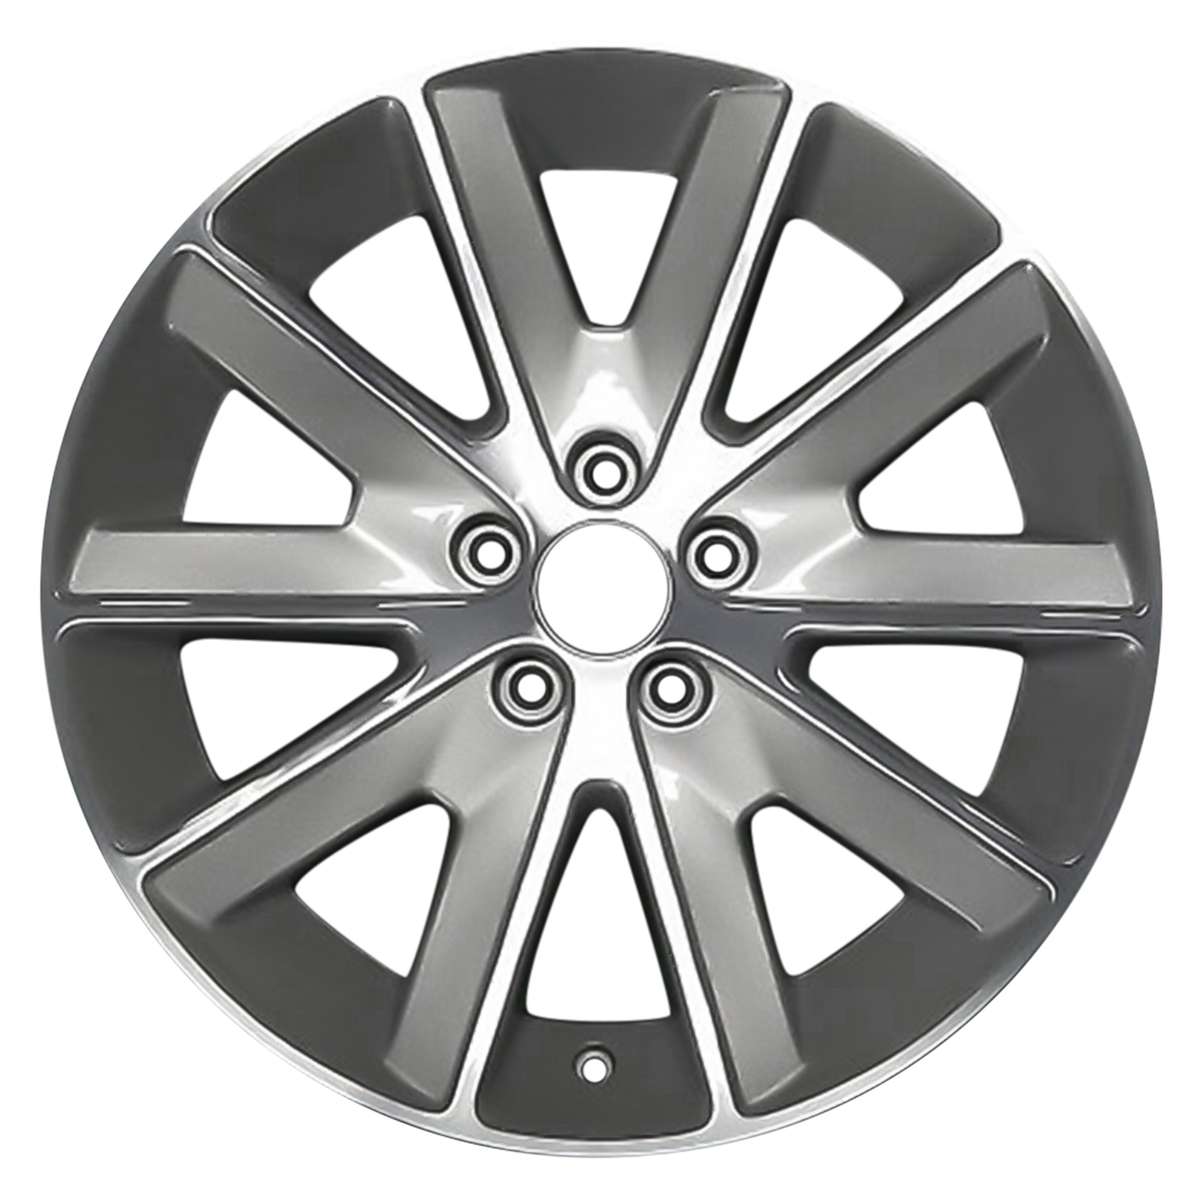 2012 Ford Flex 18" OEM Wheel Rim W10155H